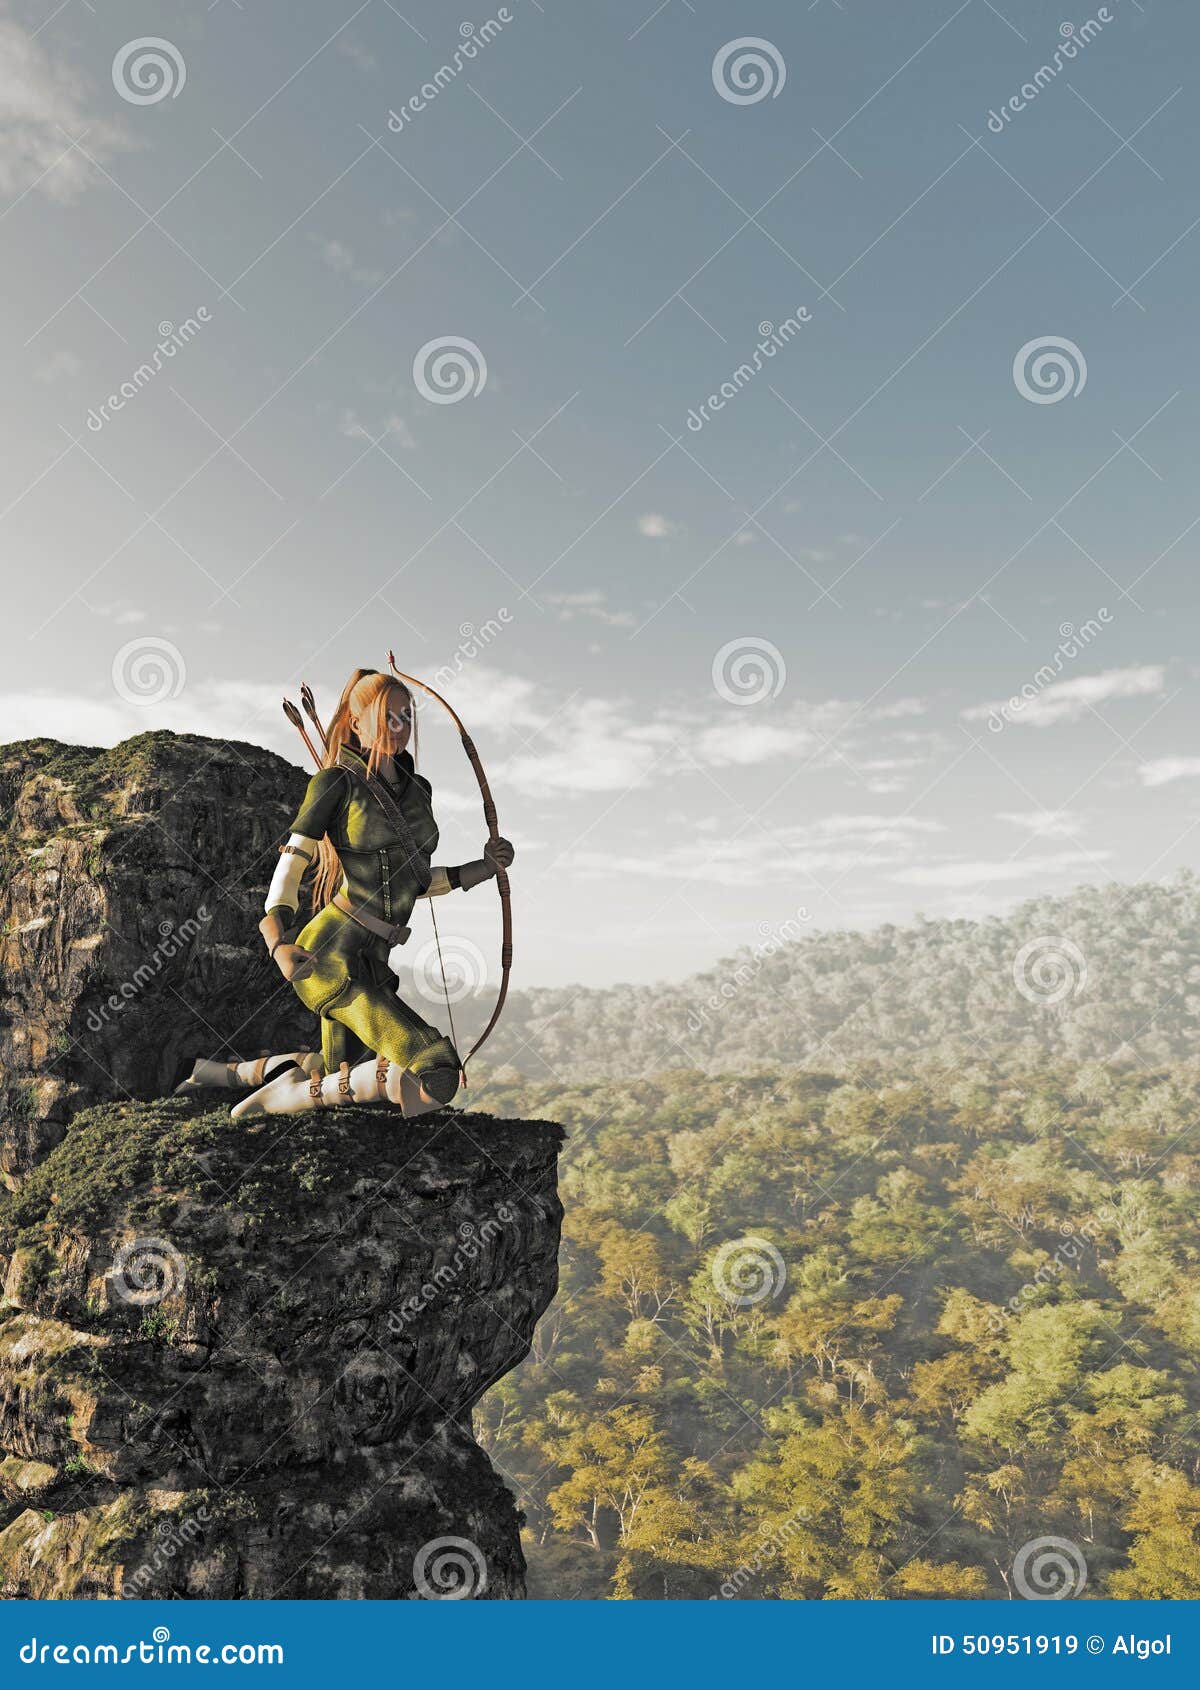 Blonde Vrouwelijk Elf Archer boven het Bos. De fantasieillustratie van een schutter van het blonde vrouwelijke elf met boog en pijlen kleedde zich in groen en bruin, knielend aan de kant van een rotsachtige klip en houdend horloge boven de bos, 3d digitaal teruggegeven illustratie